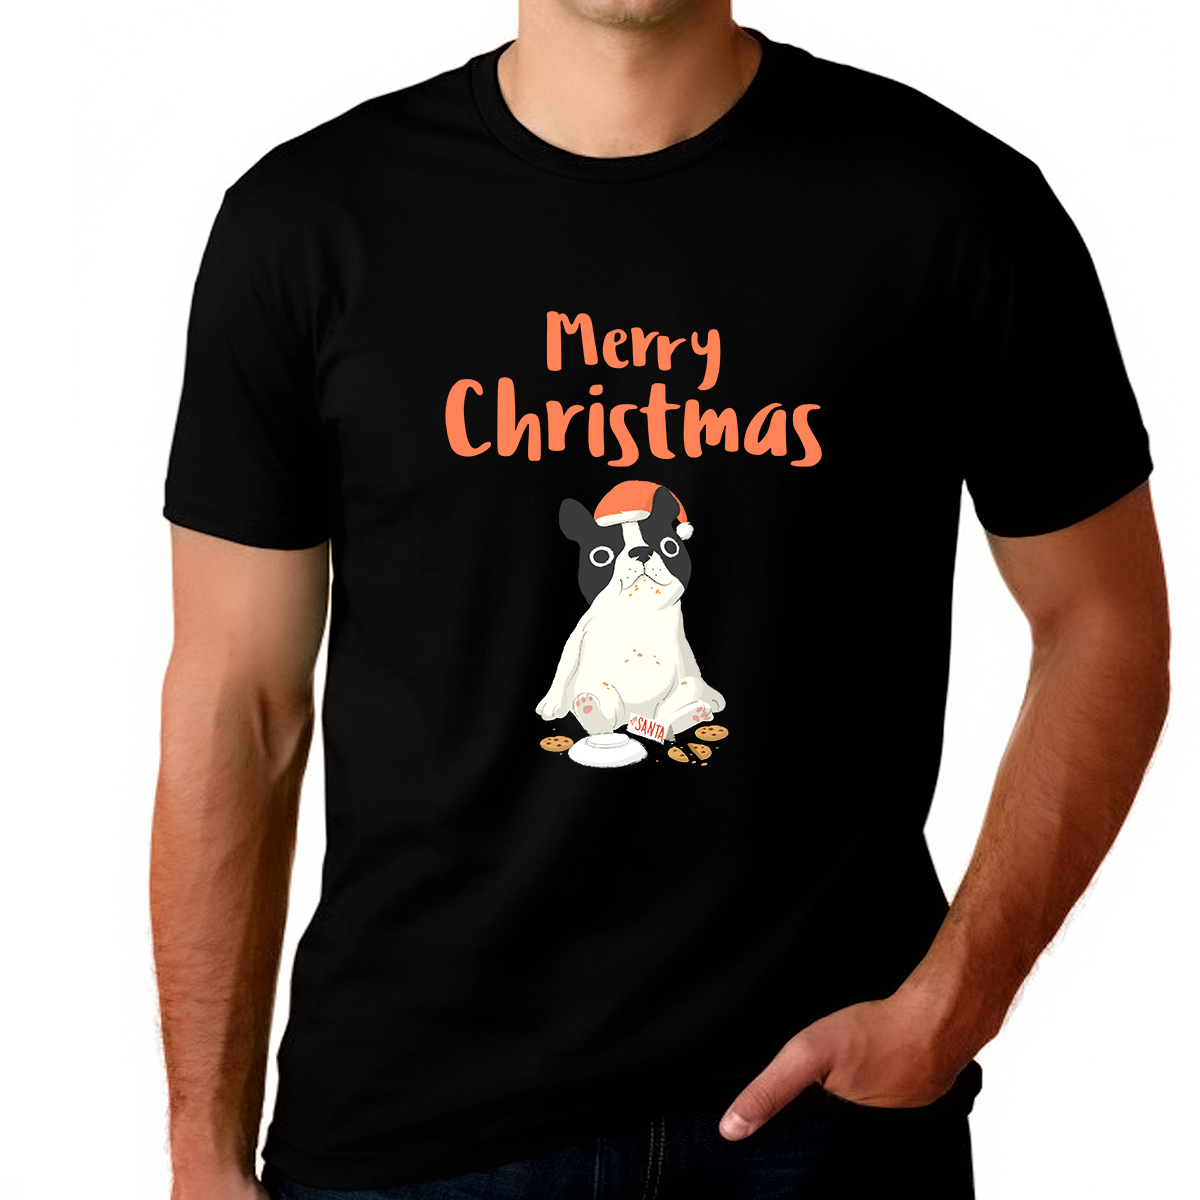 Funny Dog Plus Size Christmas Pajamas Funny Plus Size Christmas Shirts for Men Plus Size Christmas Shirt